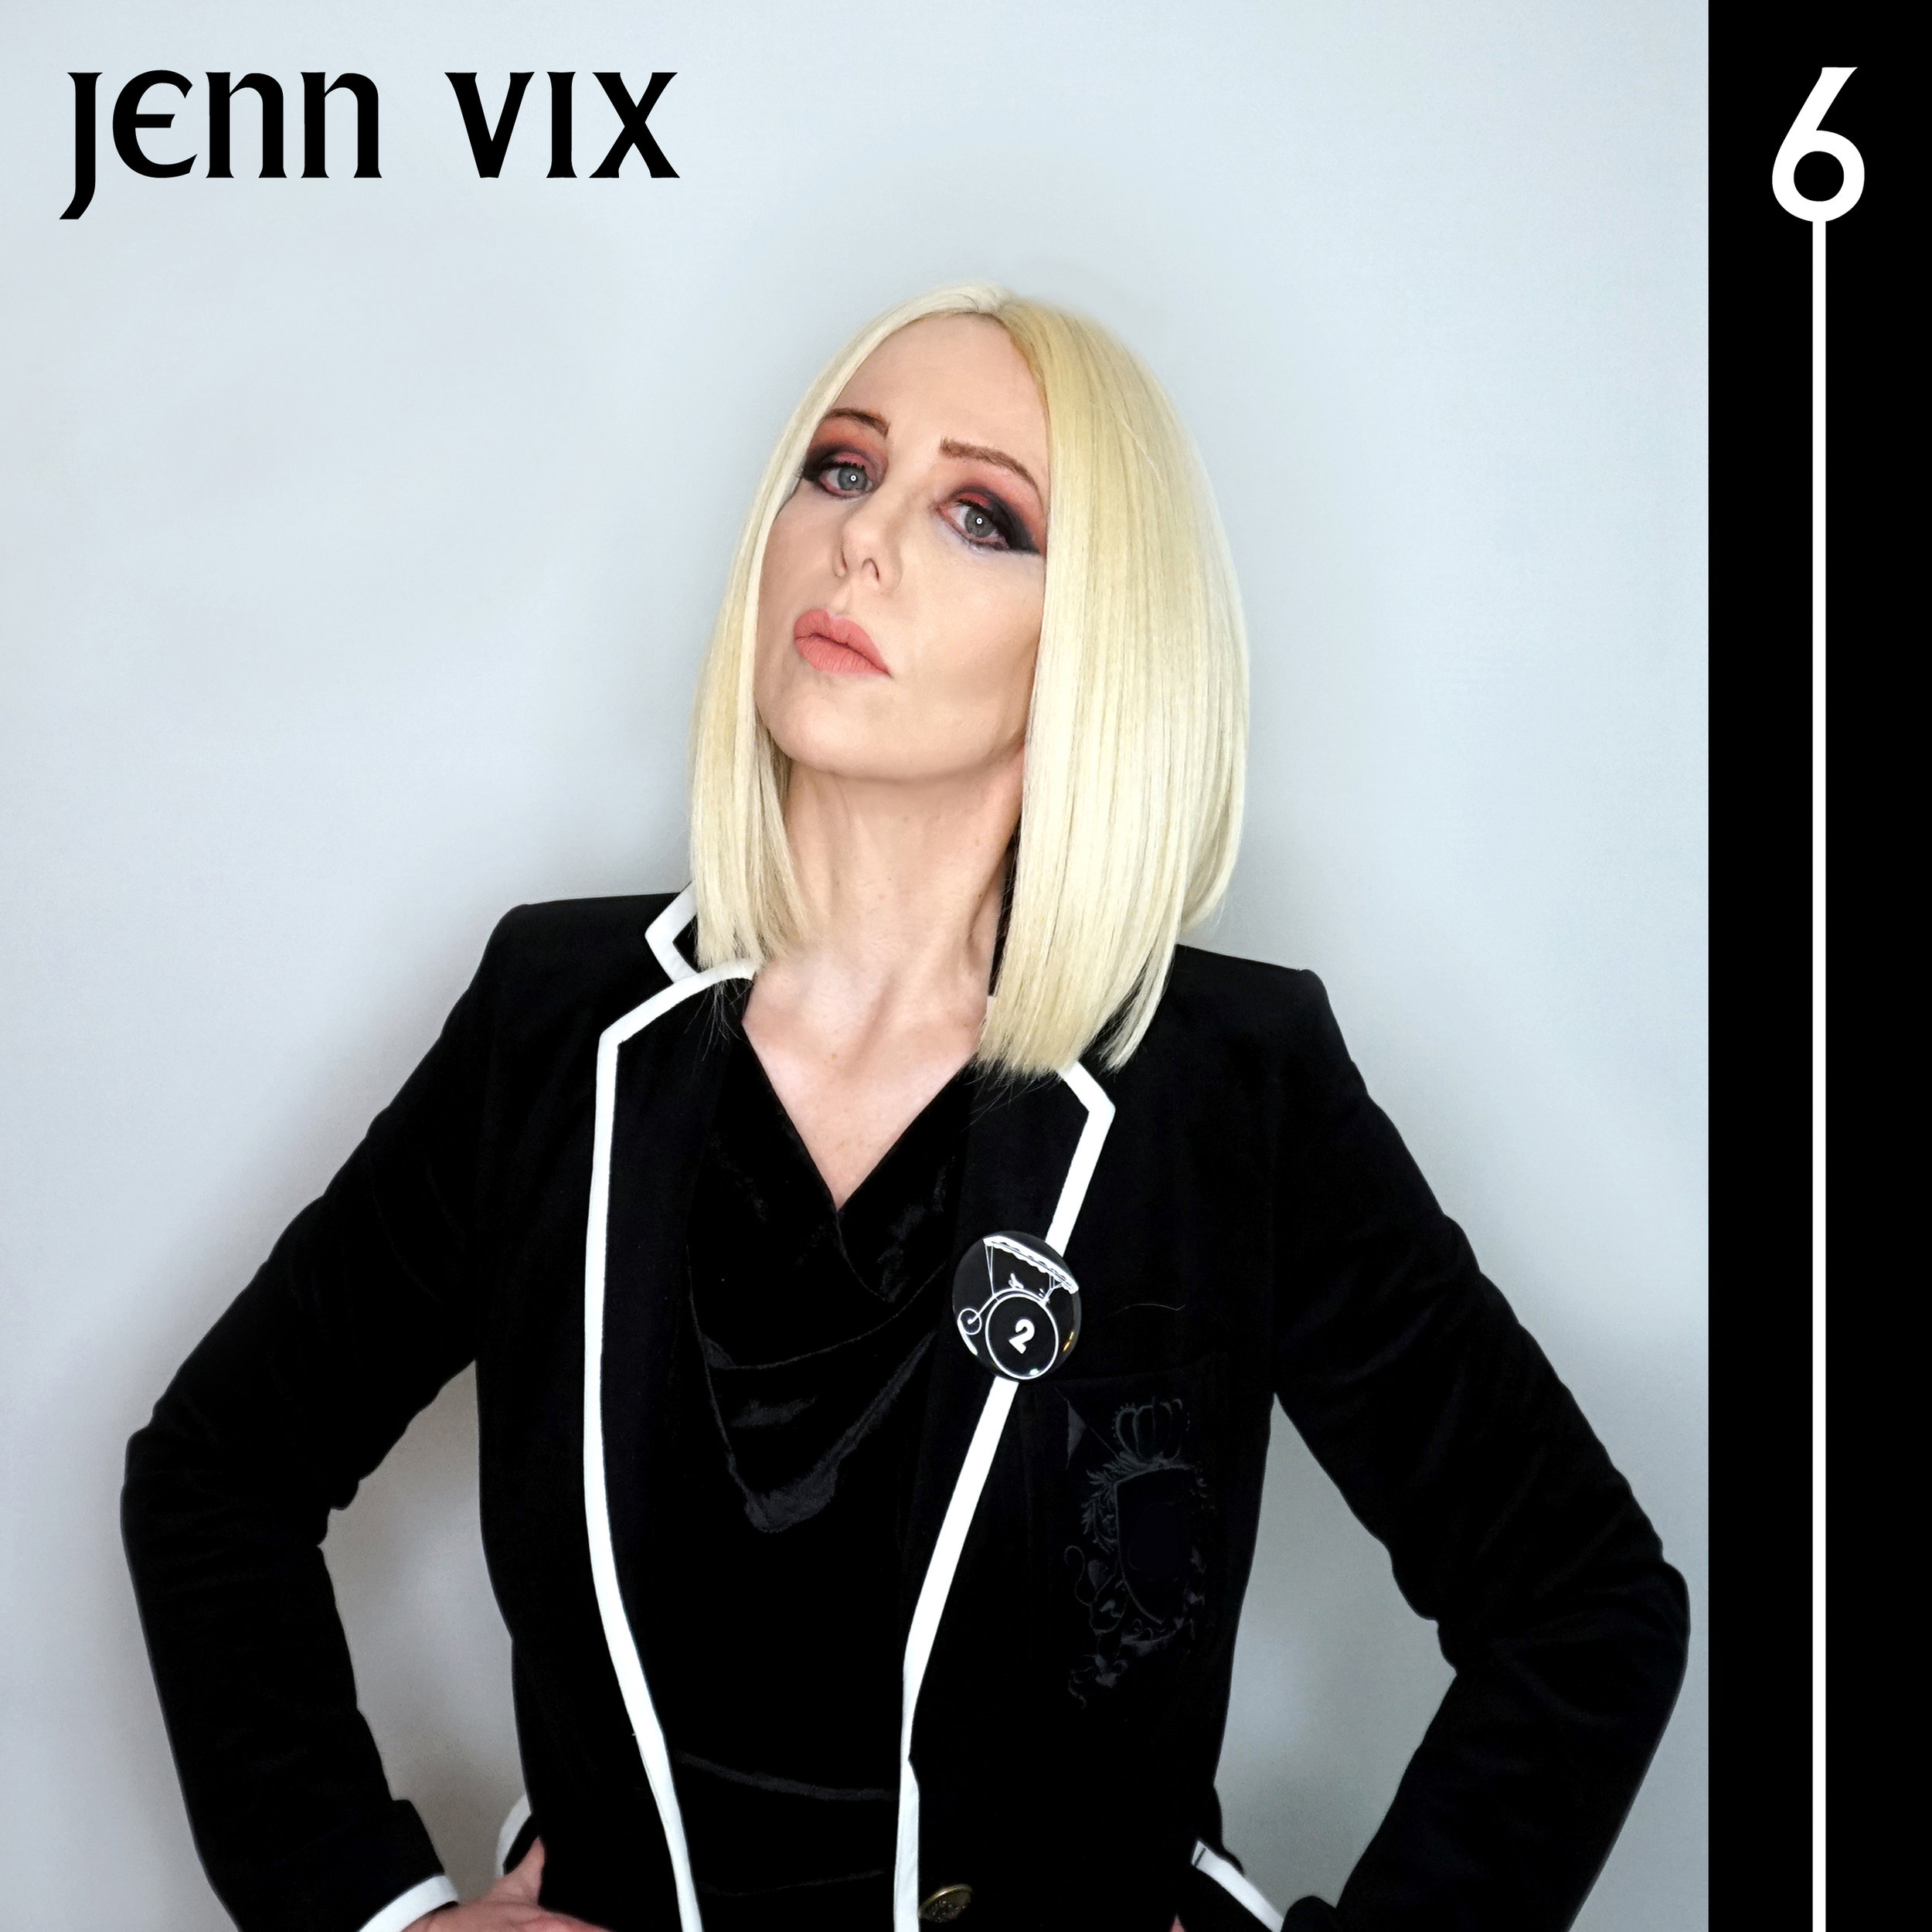 Jenn-Vix-6-cover-art.jpg